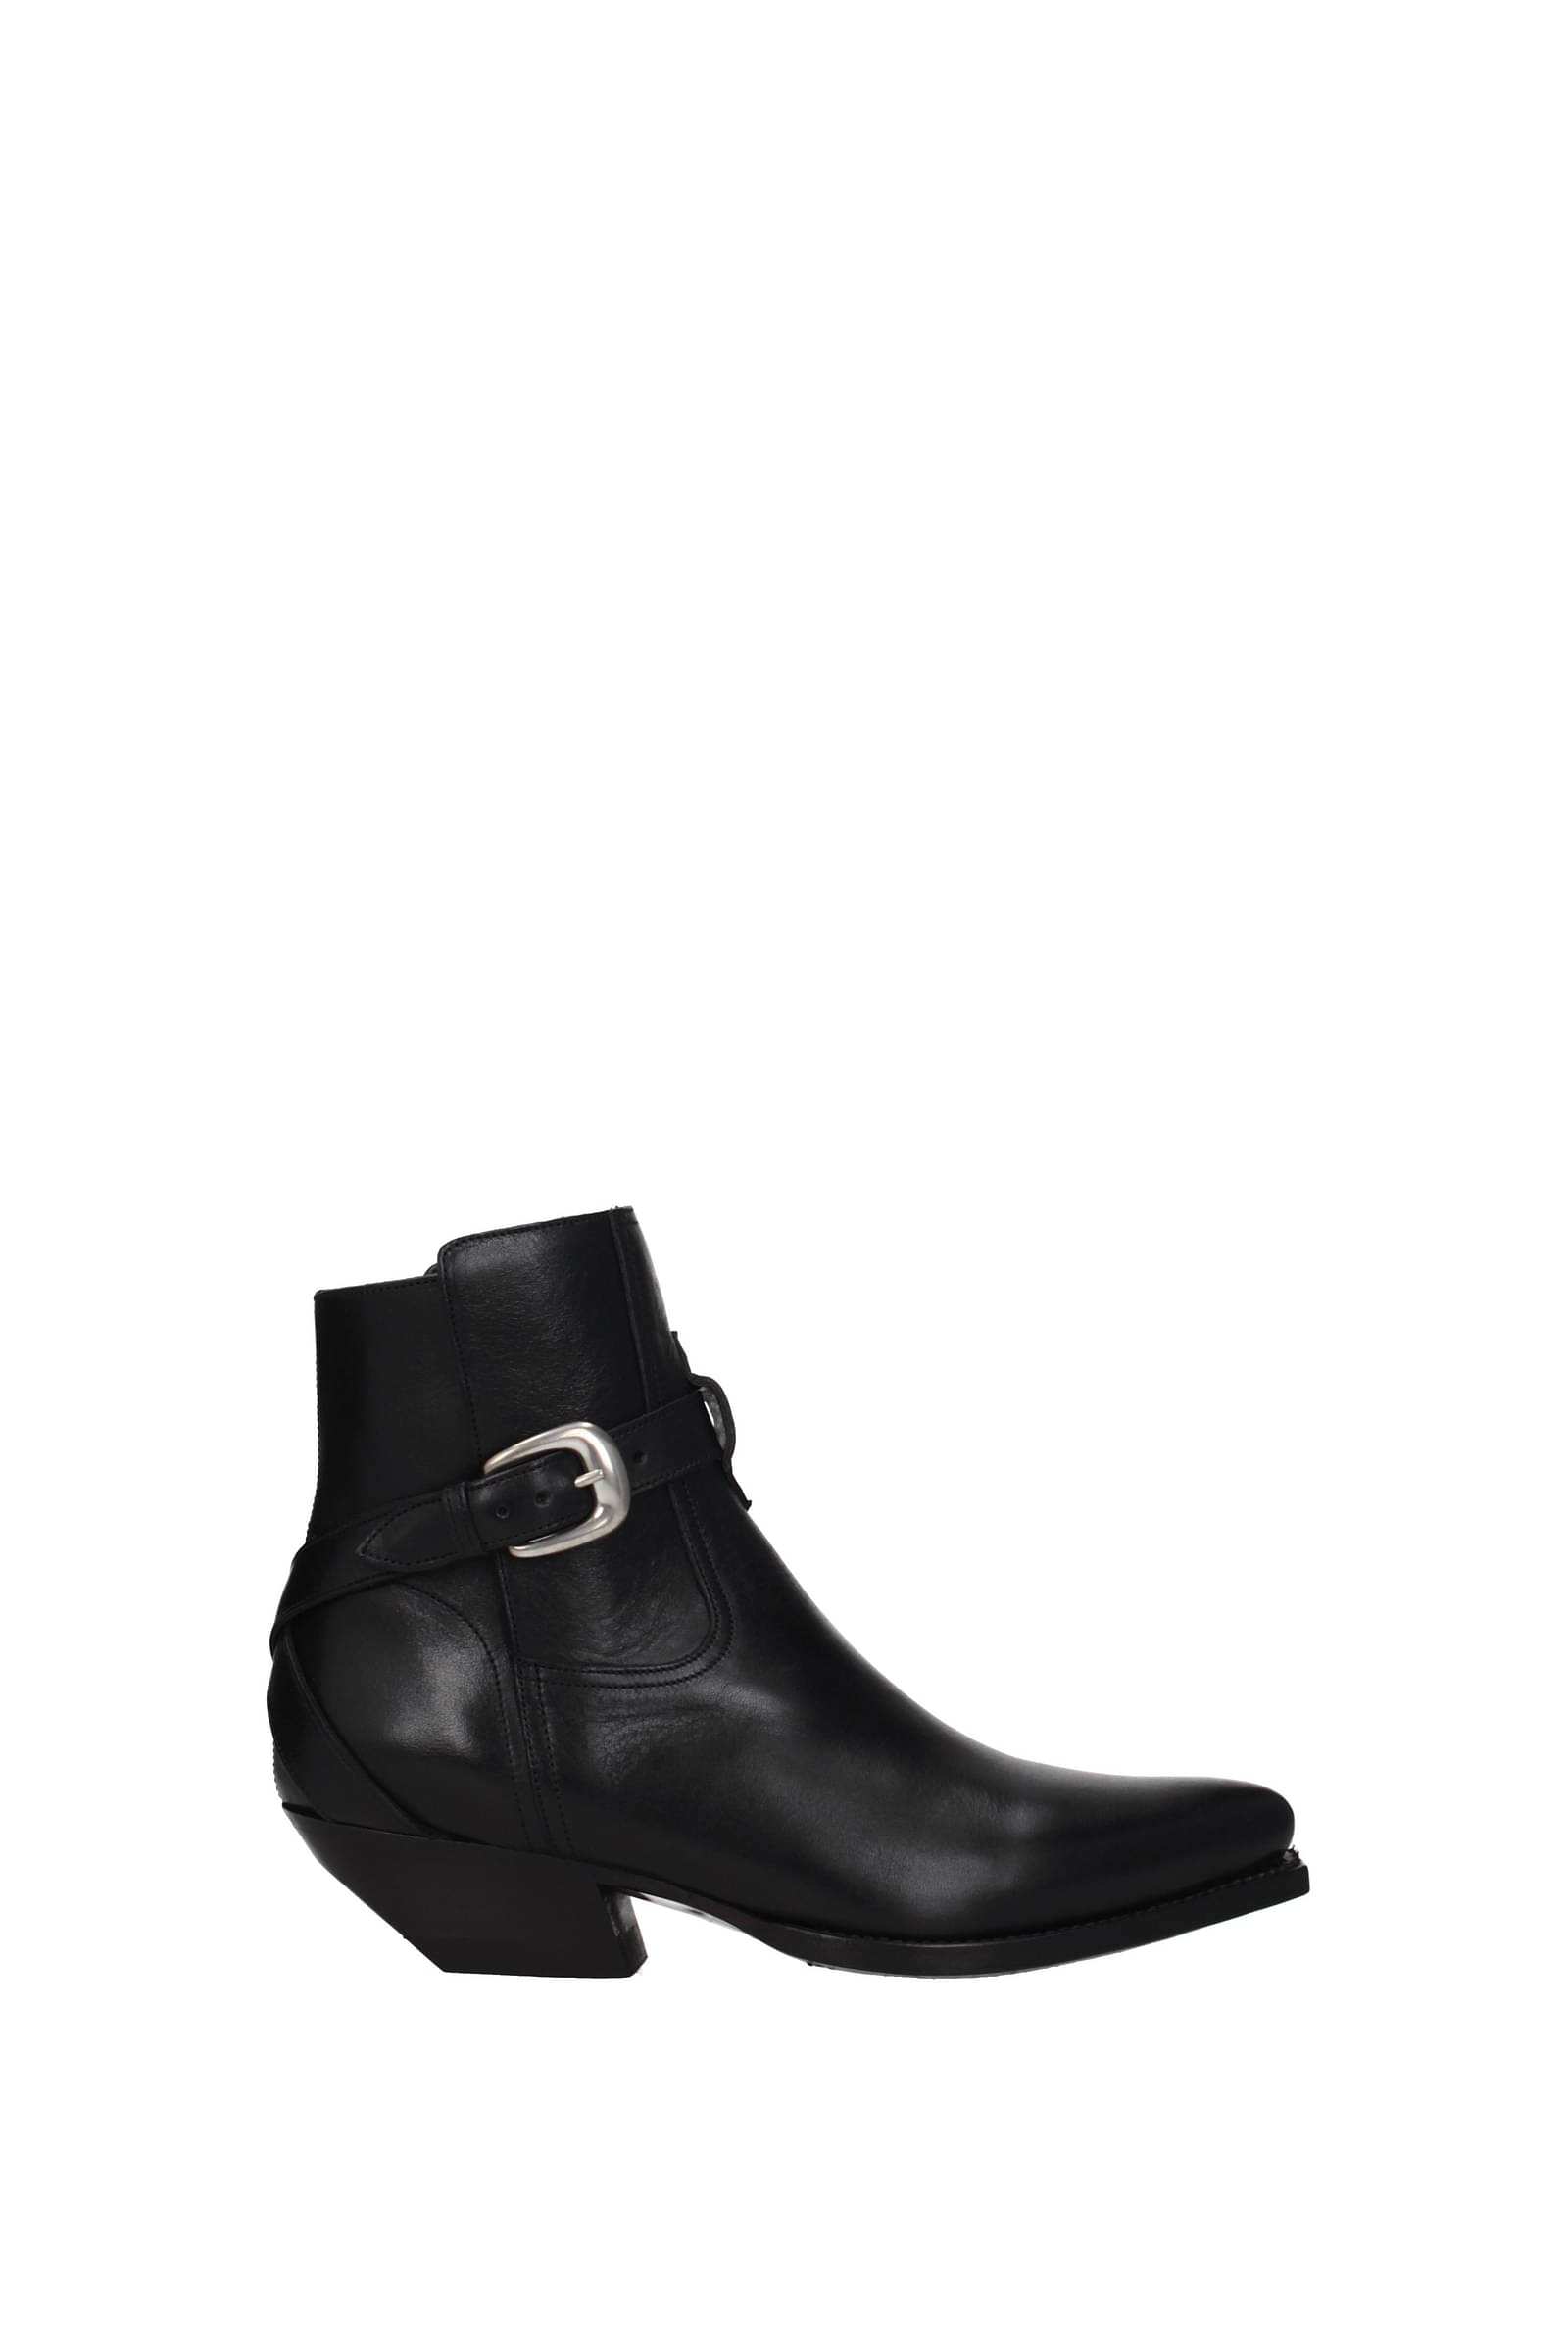 Celine Ankle boots jodphur Women 347383492C38NO Leather Black 552€